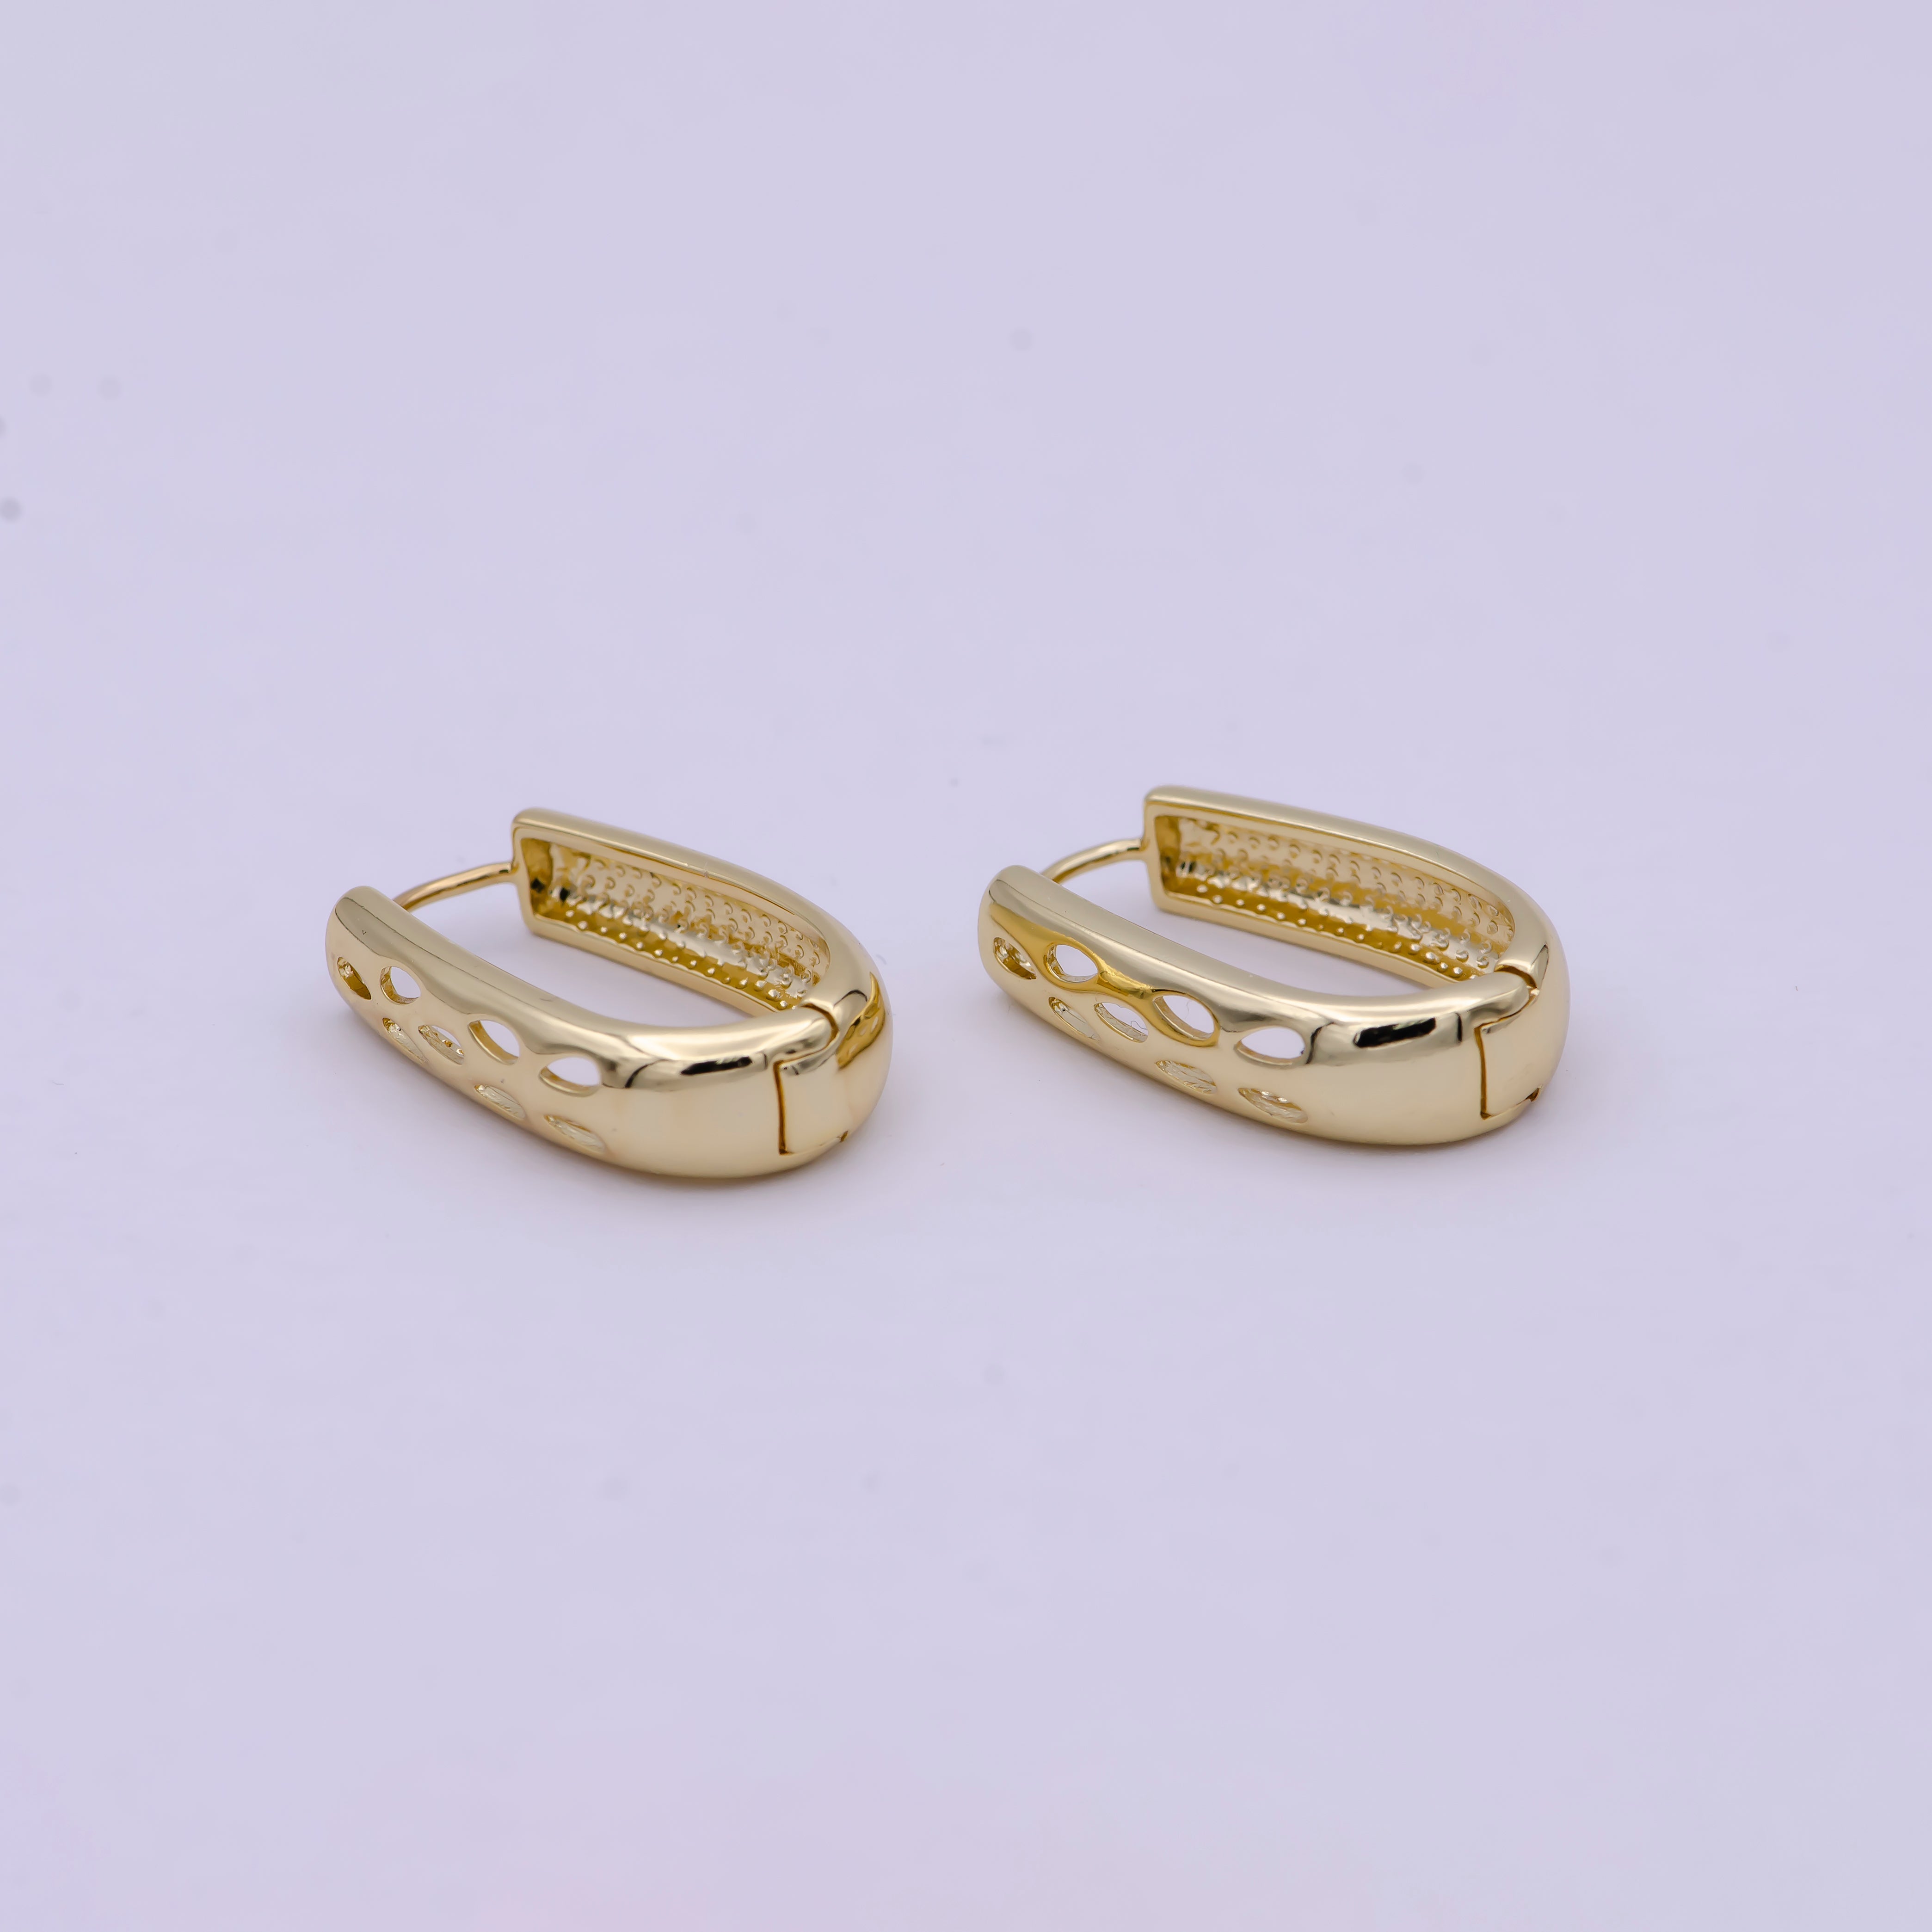 Minimalist Huggie Earring 14k Gold Filled Classic Tear Drop Earring FaSHION Jewelry - DLUXCA